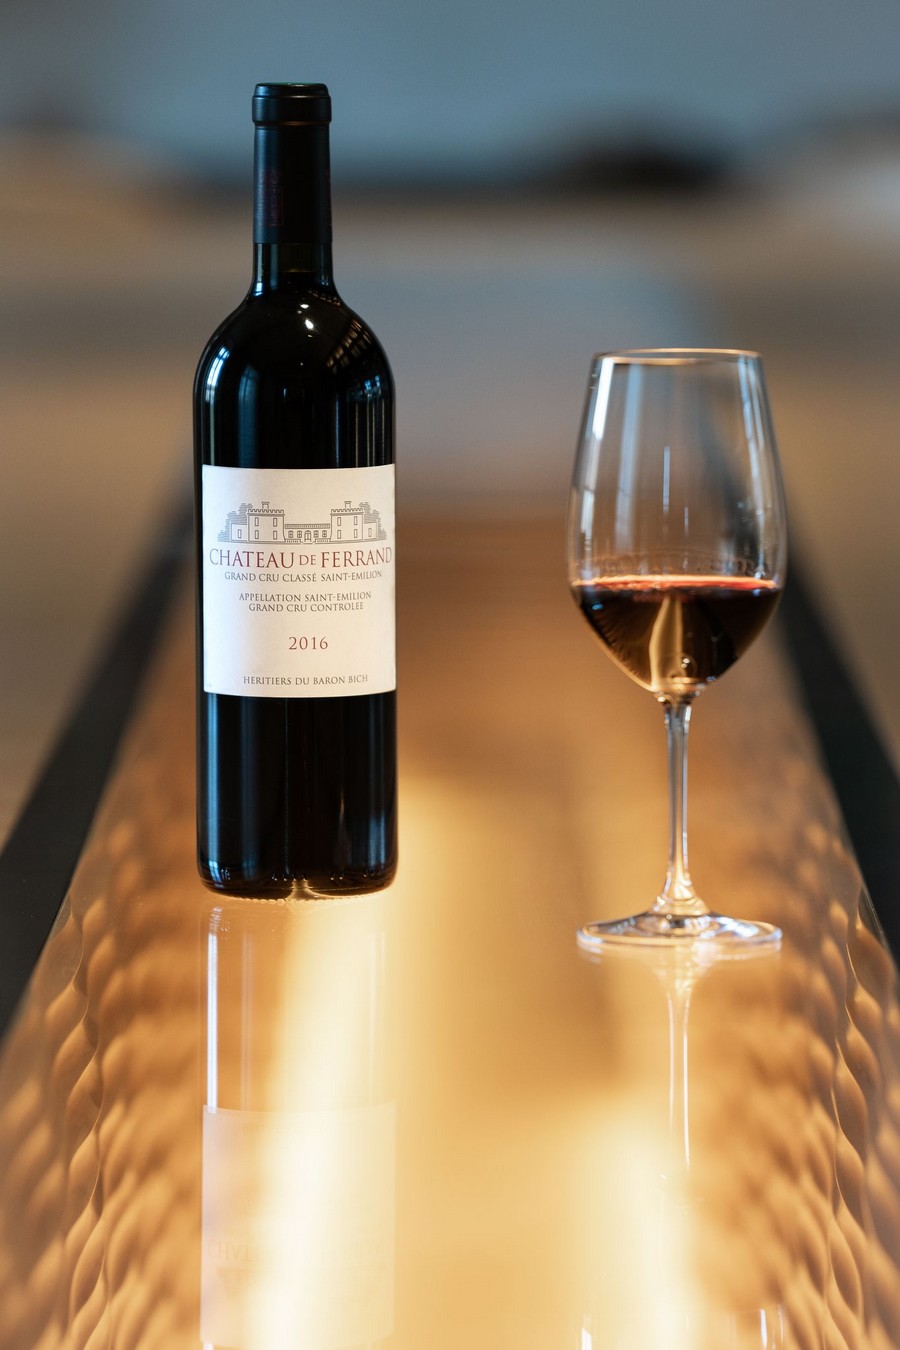 Bouteille de vin Château de Ferrand Grand Cru Classé et verre de vin rouge 